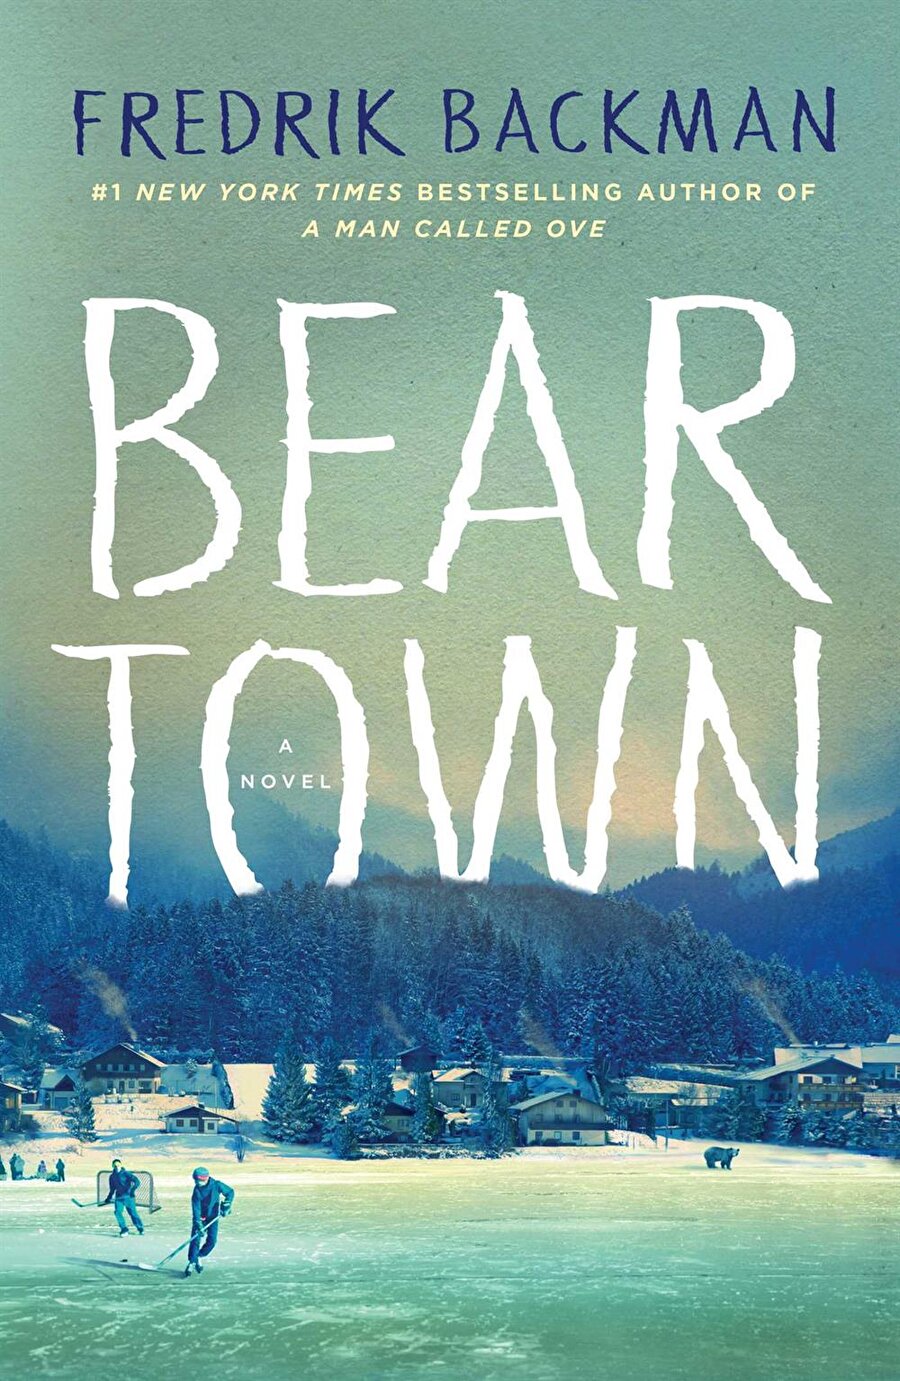 Fredrik Backman
"Beartown: A Novel"